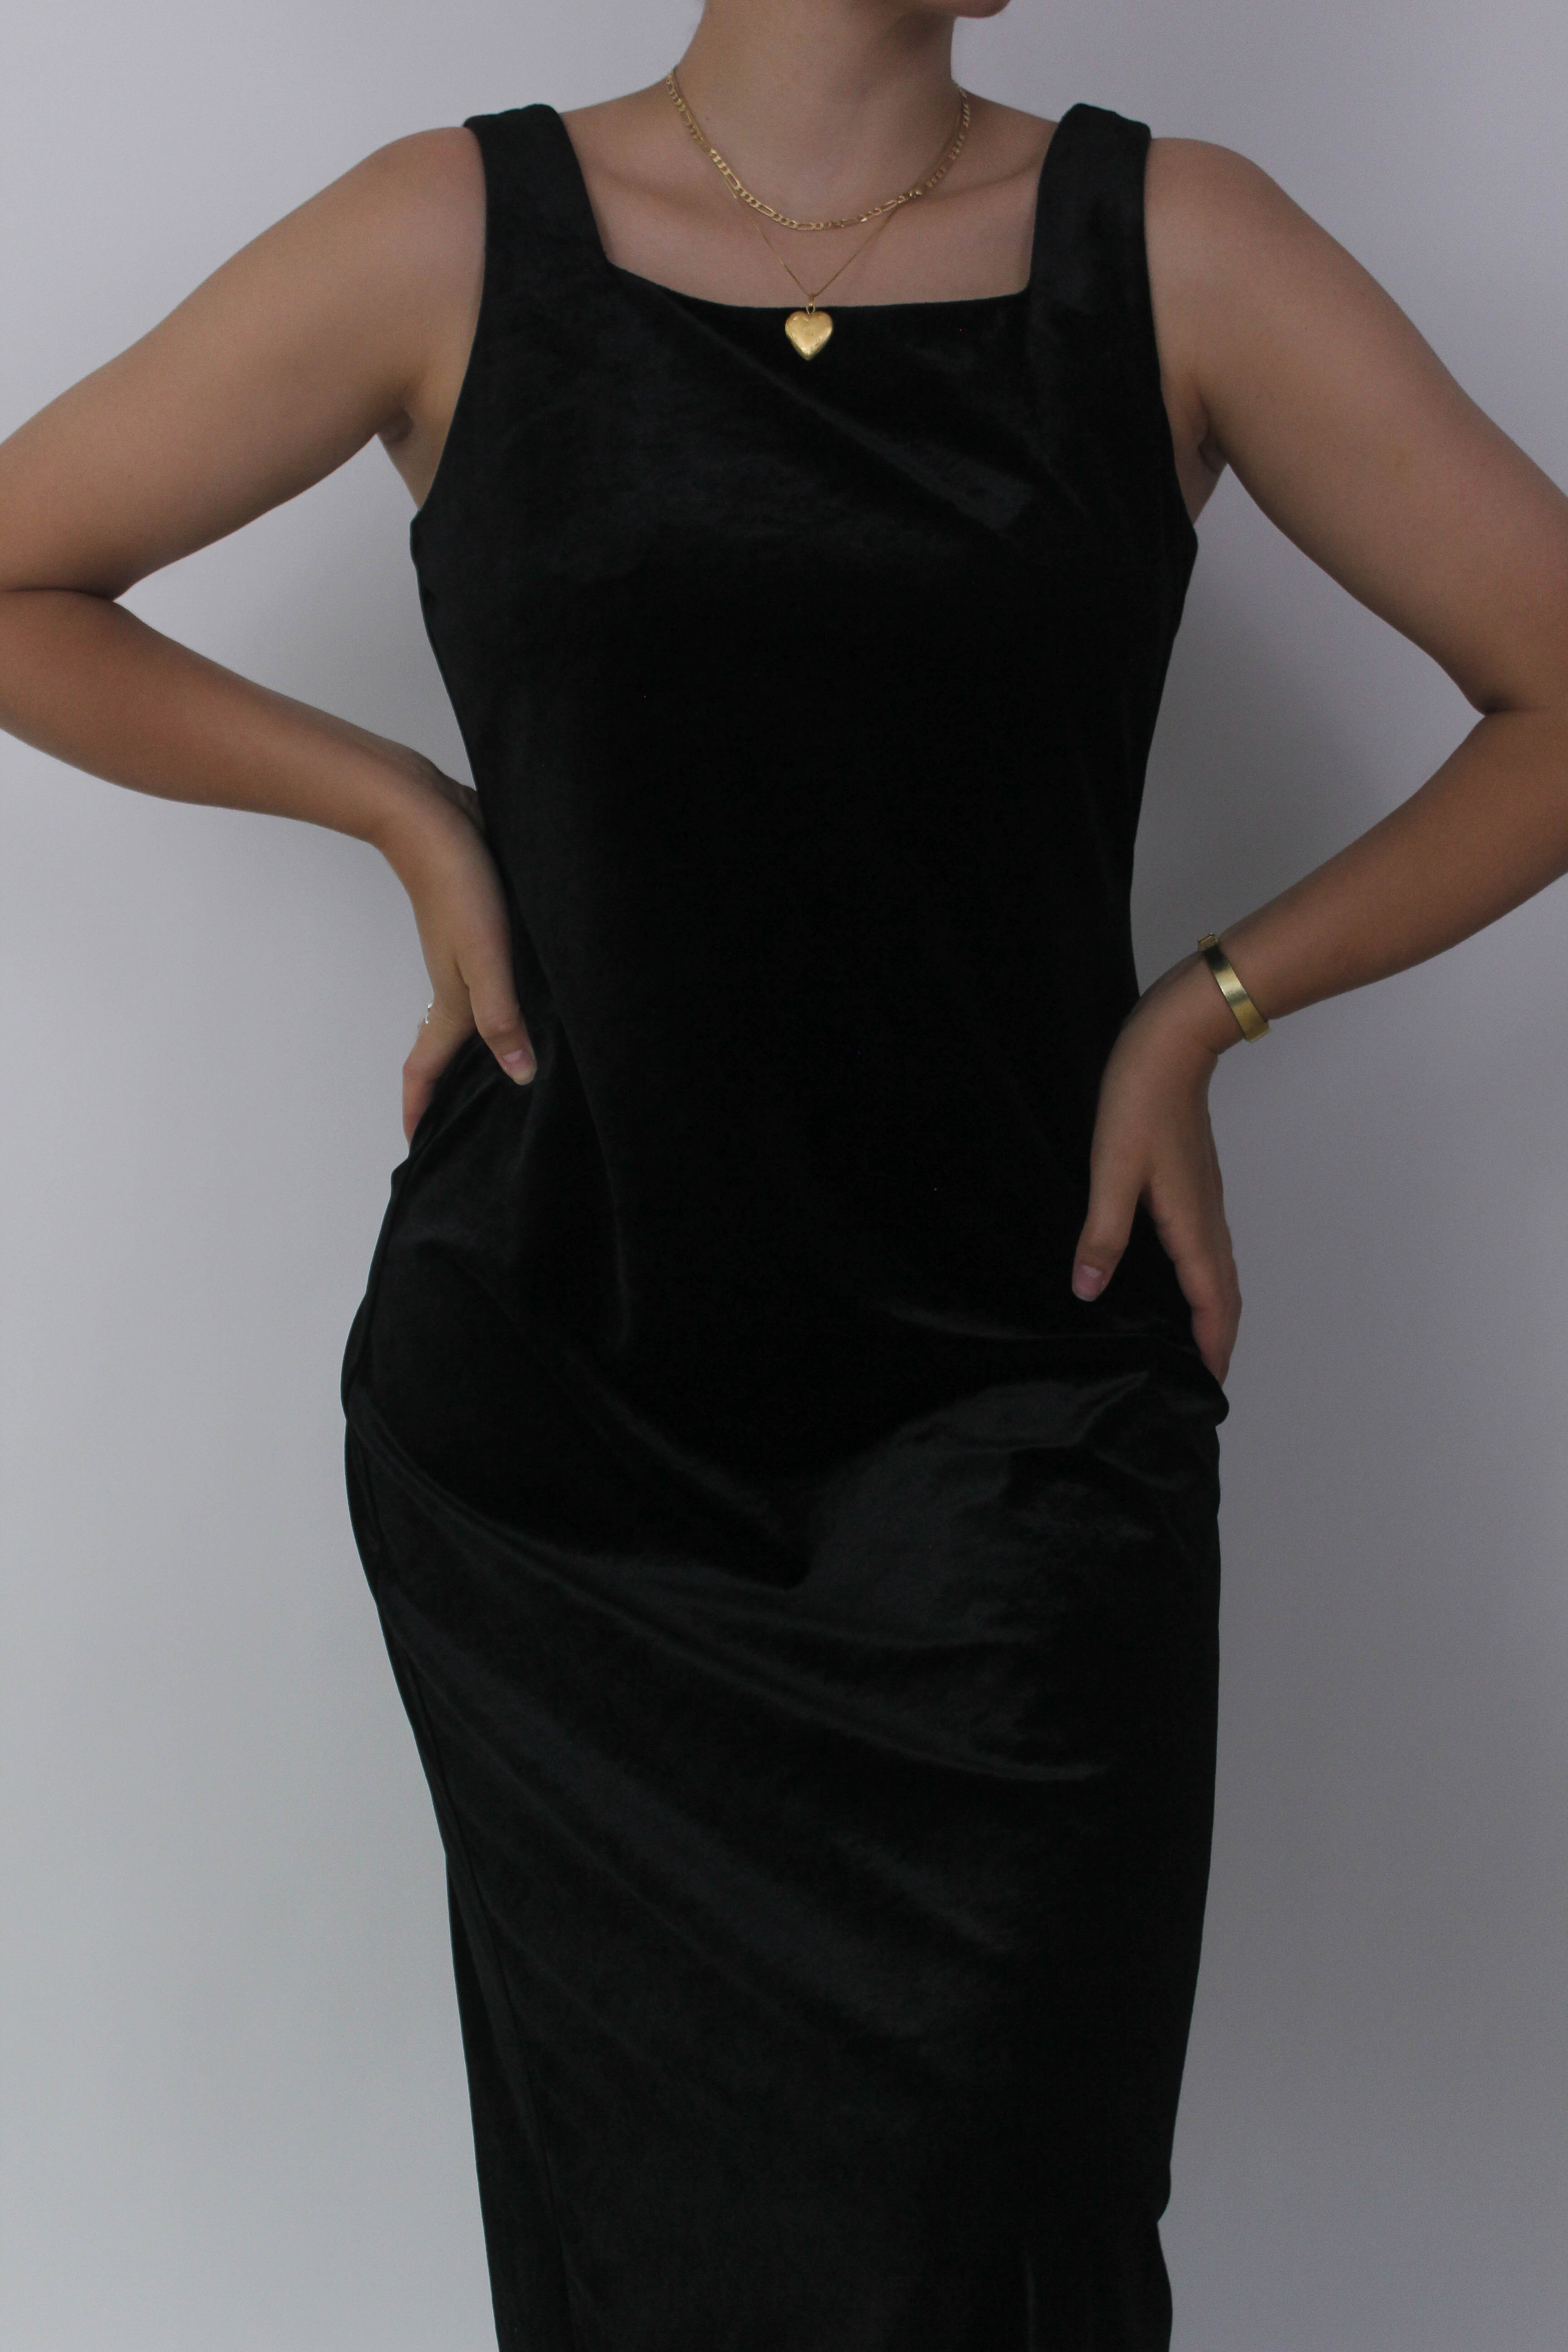 Vintage Black Velvet Mid-Length Dress